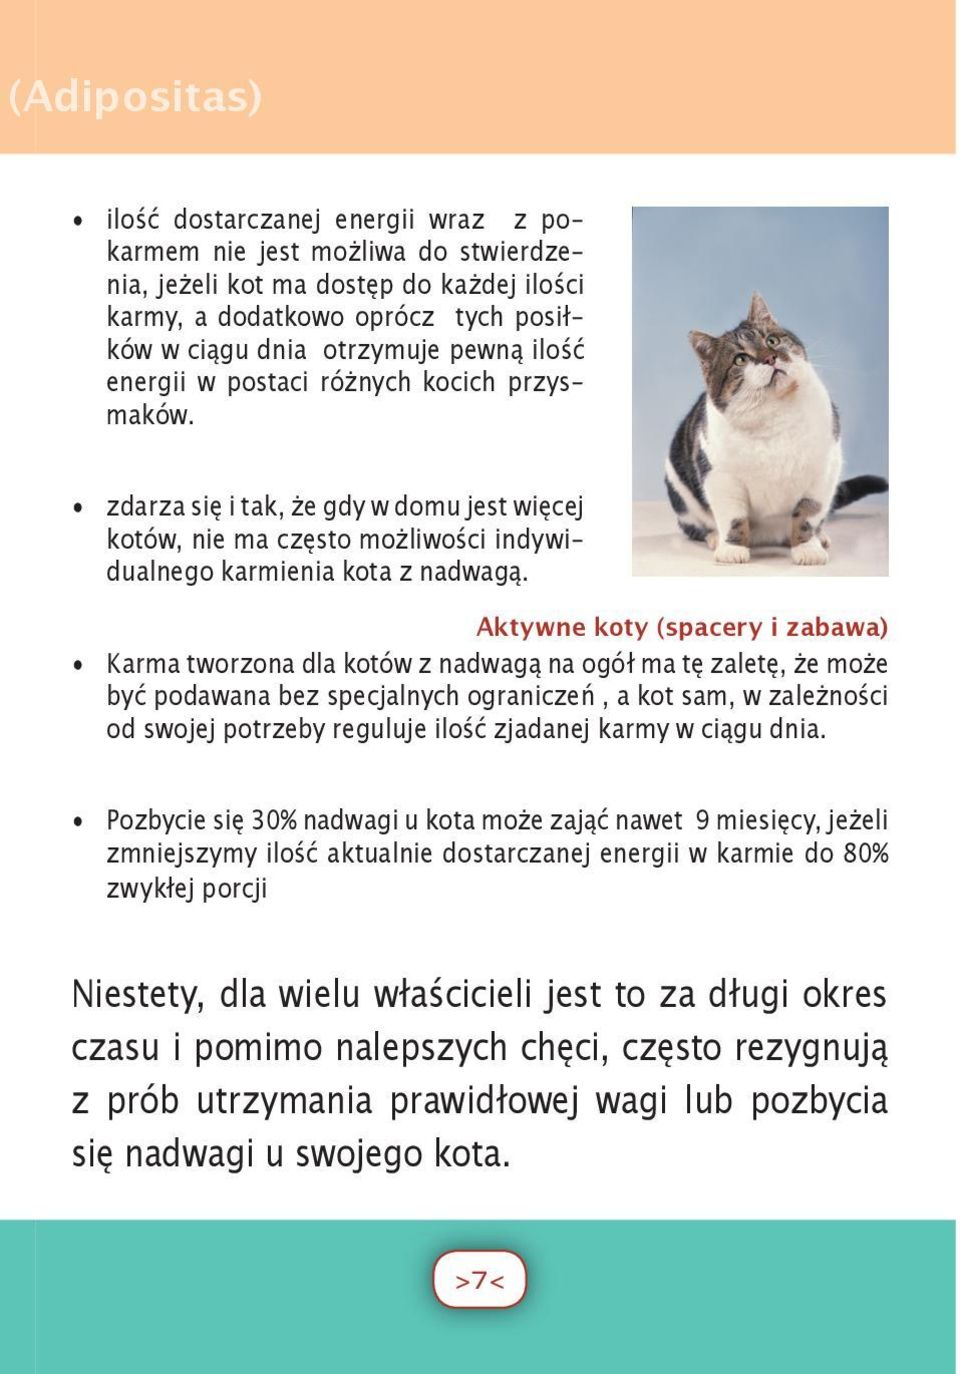 Aktywne koty (spacery i zabawa) Karma tworzona dla kotów z nadwagą na ogół ma tę zaletę, że może być podawana bez specjalnych ograniczeń, a kot sam, w zależności od swojej potrzeby reguluje ilość